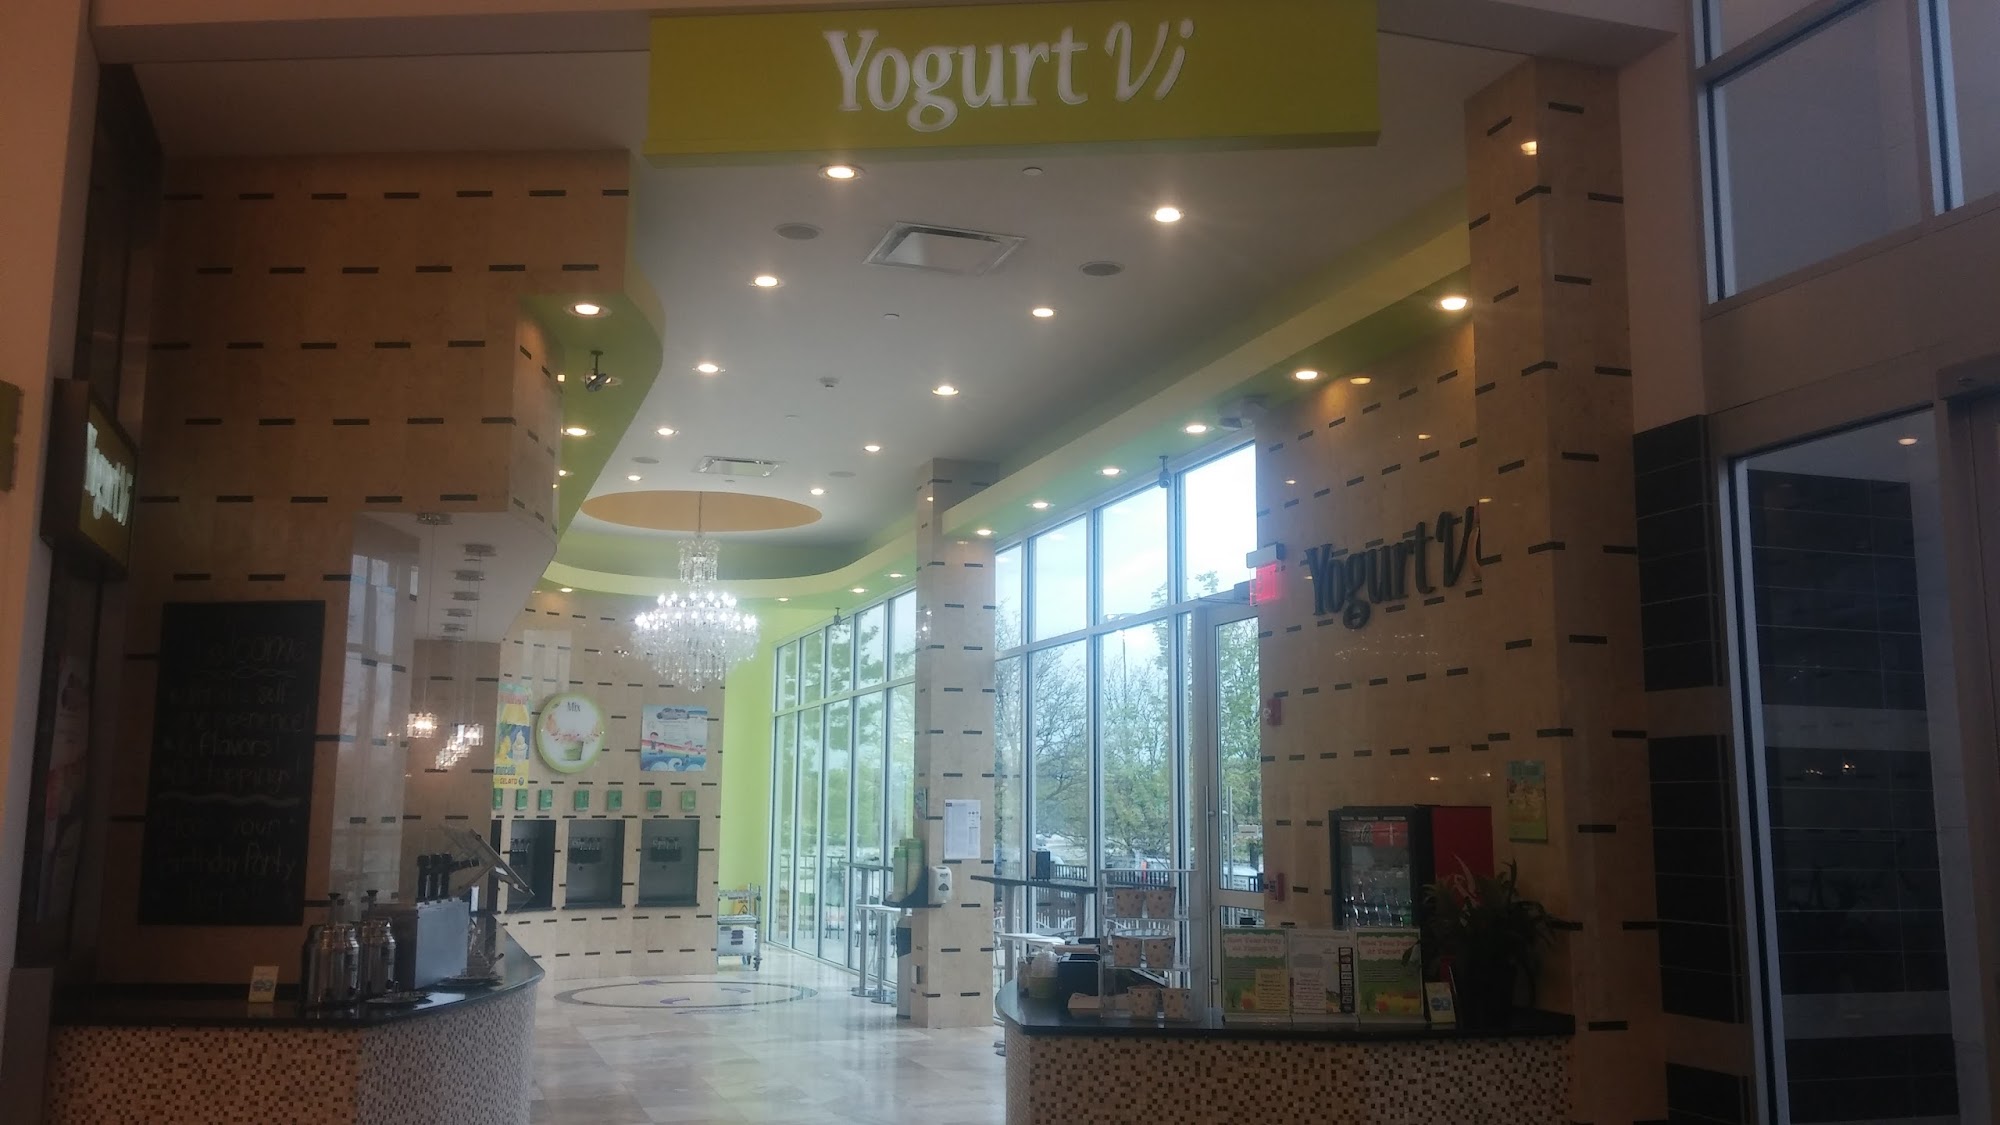 Yogurt Vi